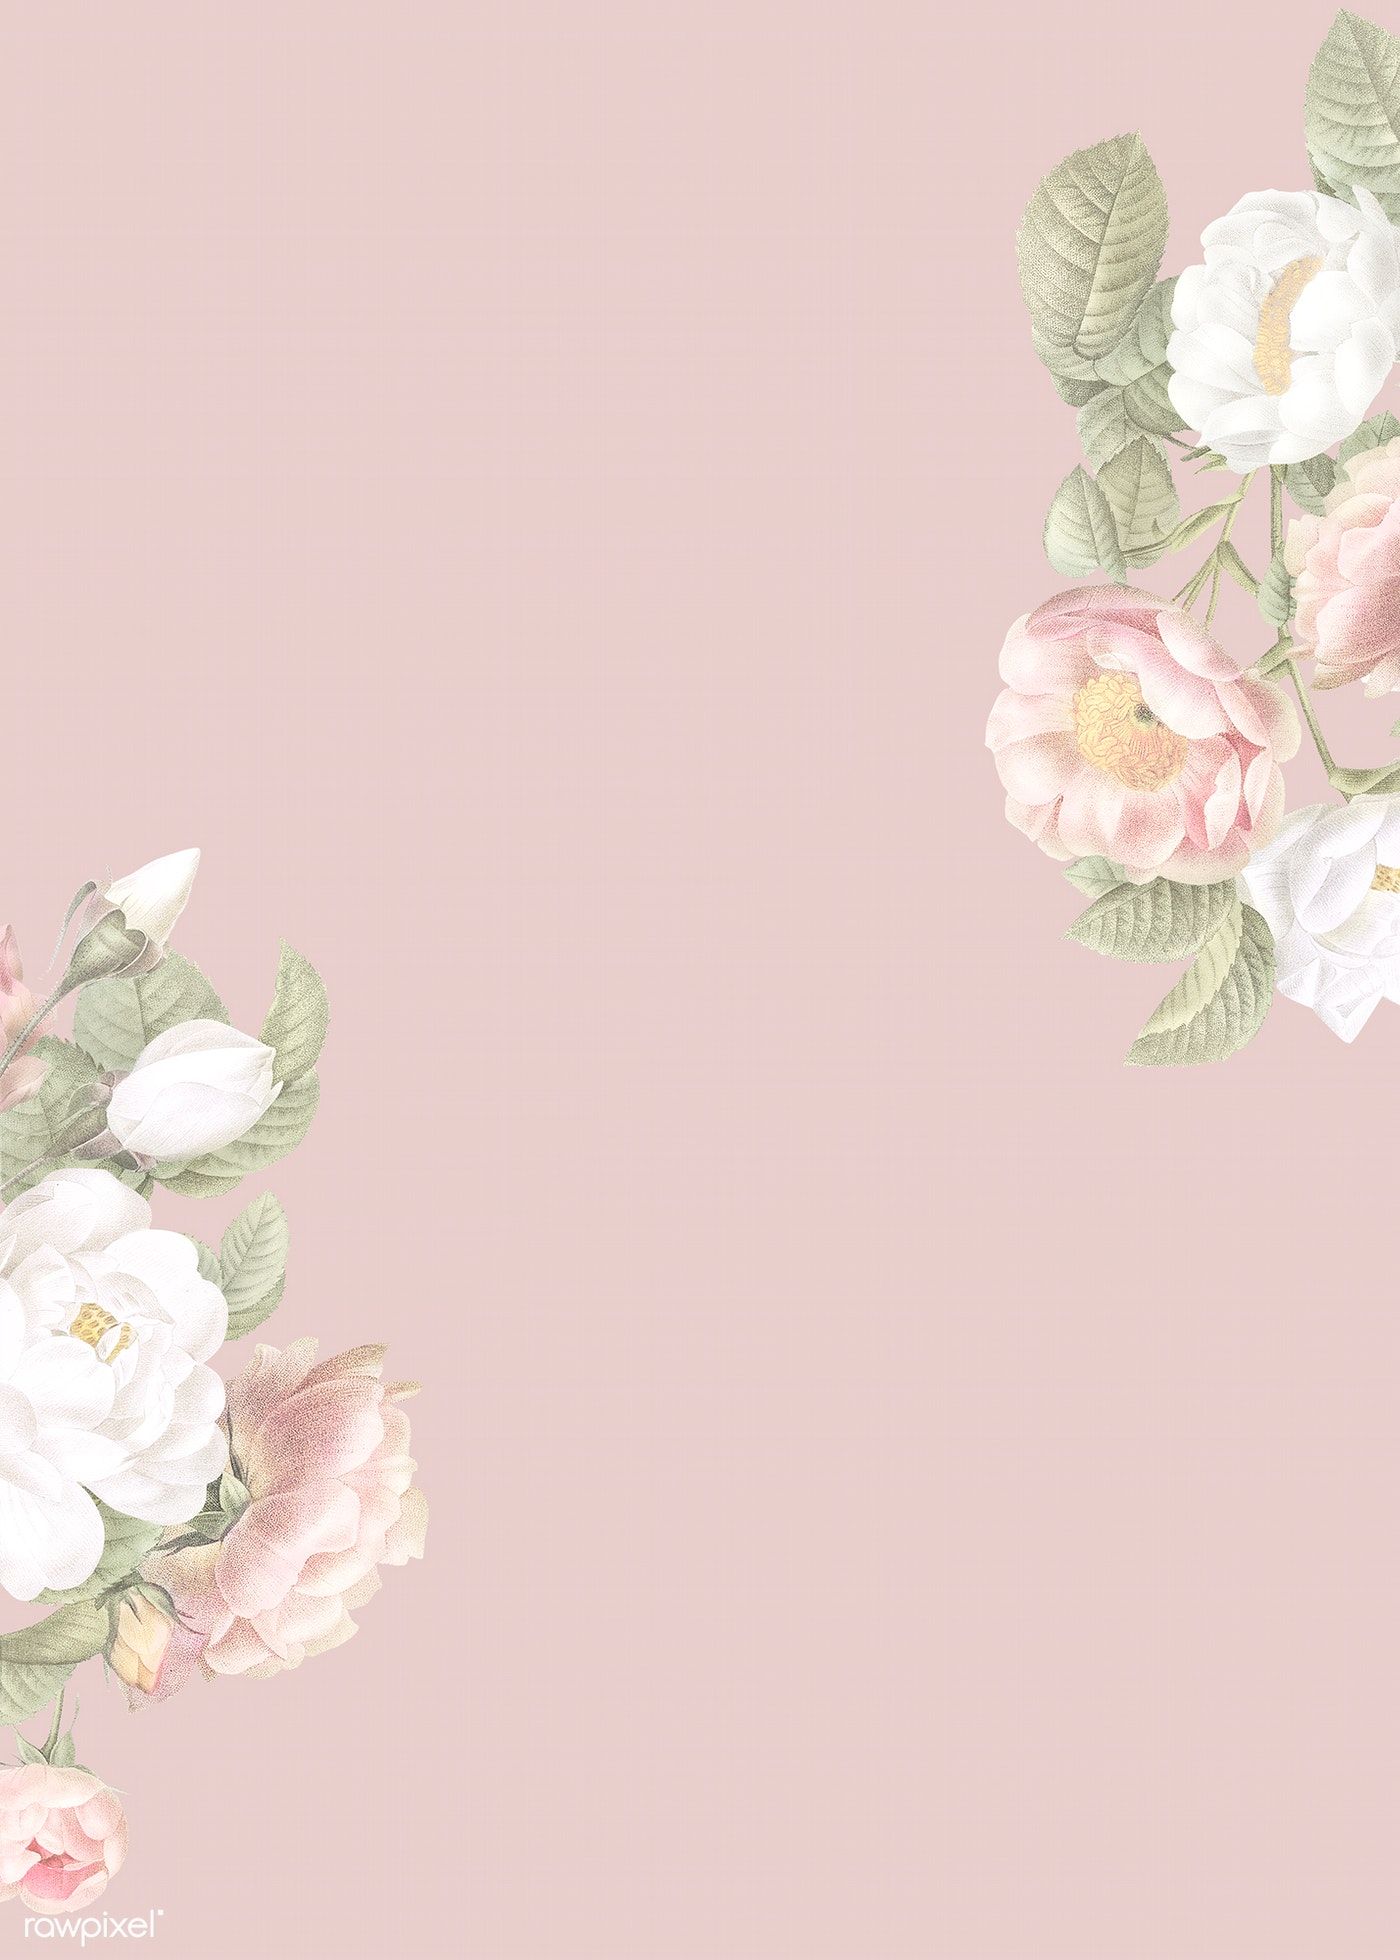 Elegant Floral Frame Design Illustration Premium Image By